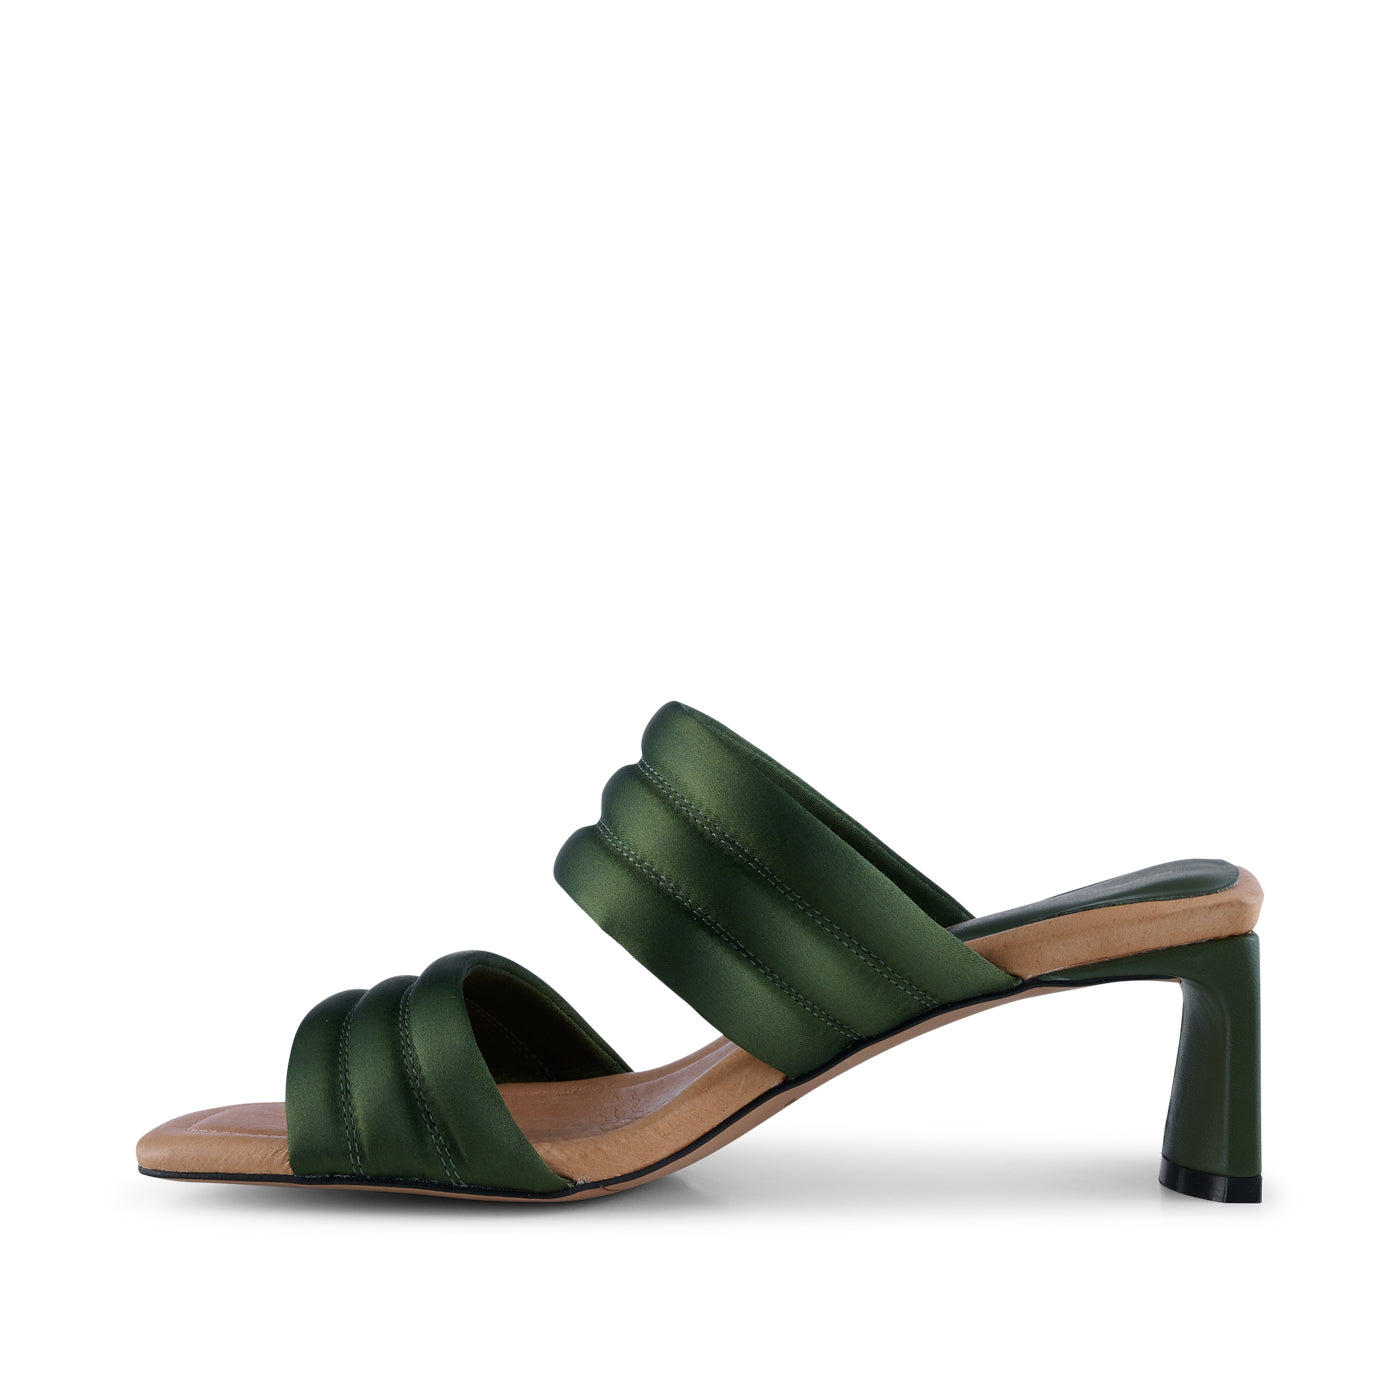 SHOE THE BEAR WOMENS Sylvi hæl tekstil Heel Sandals 822 MOSS GREEN SATIN